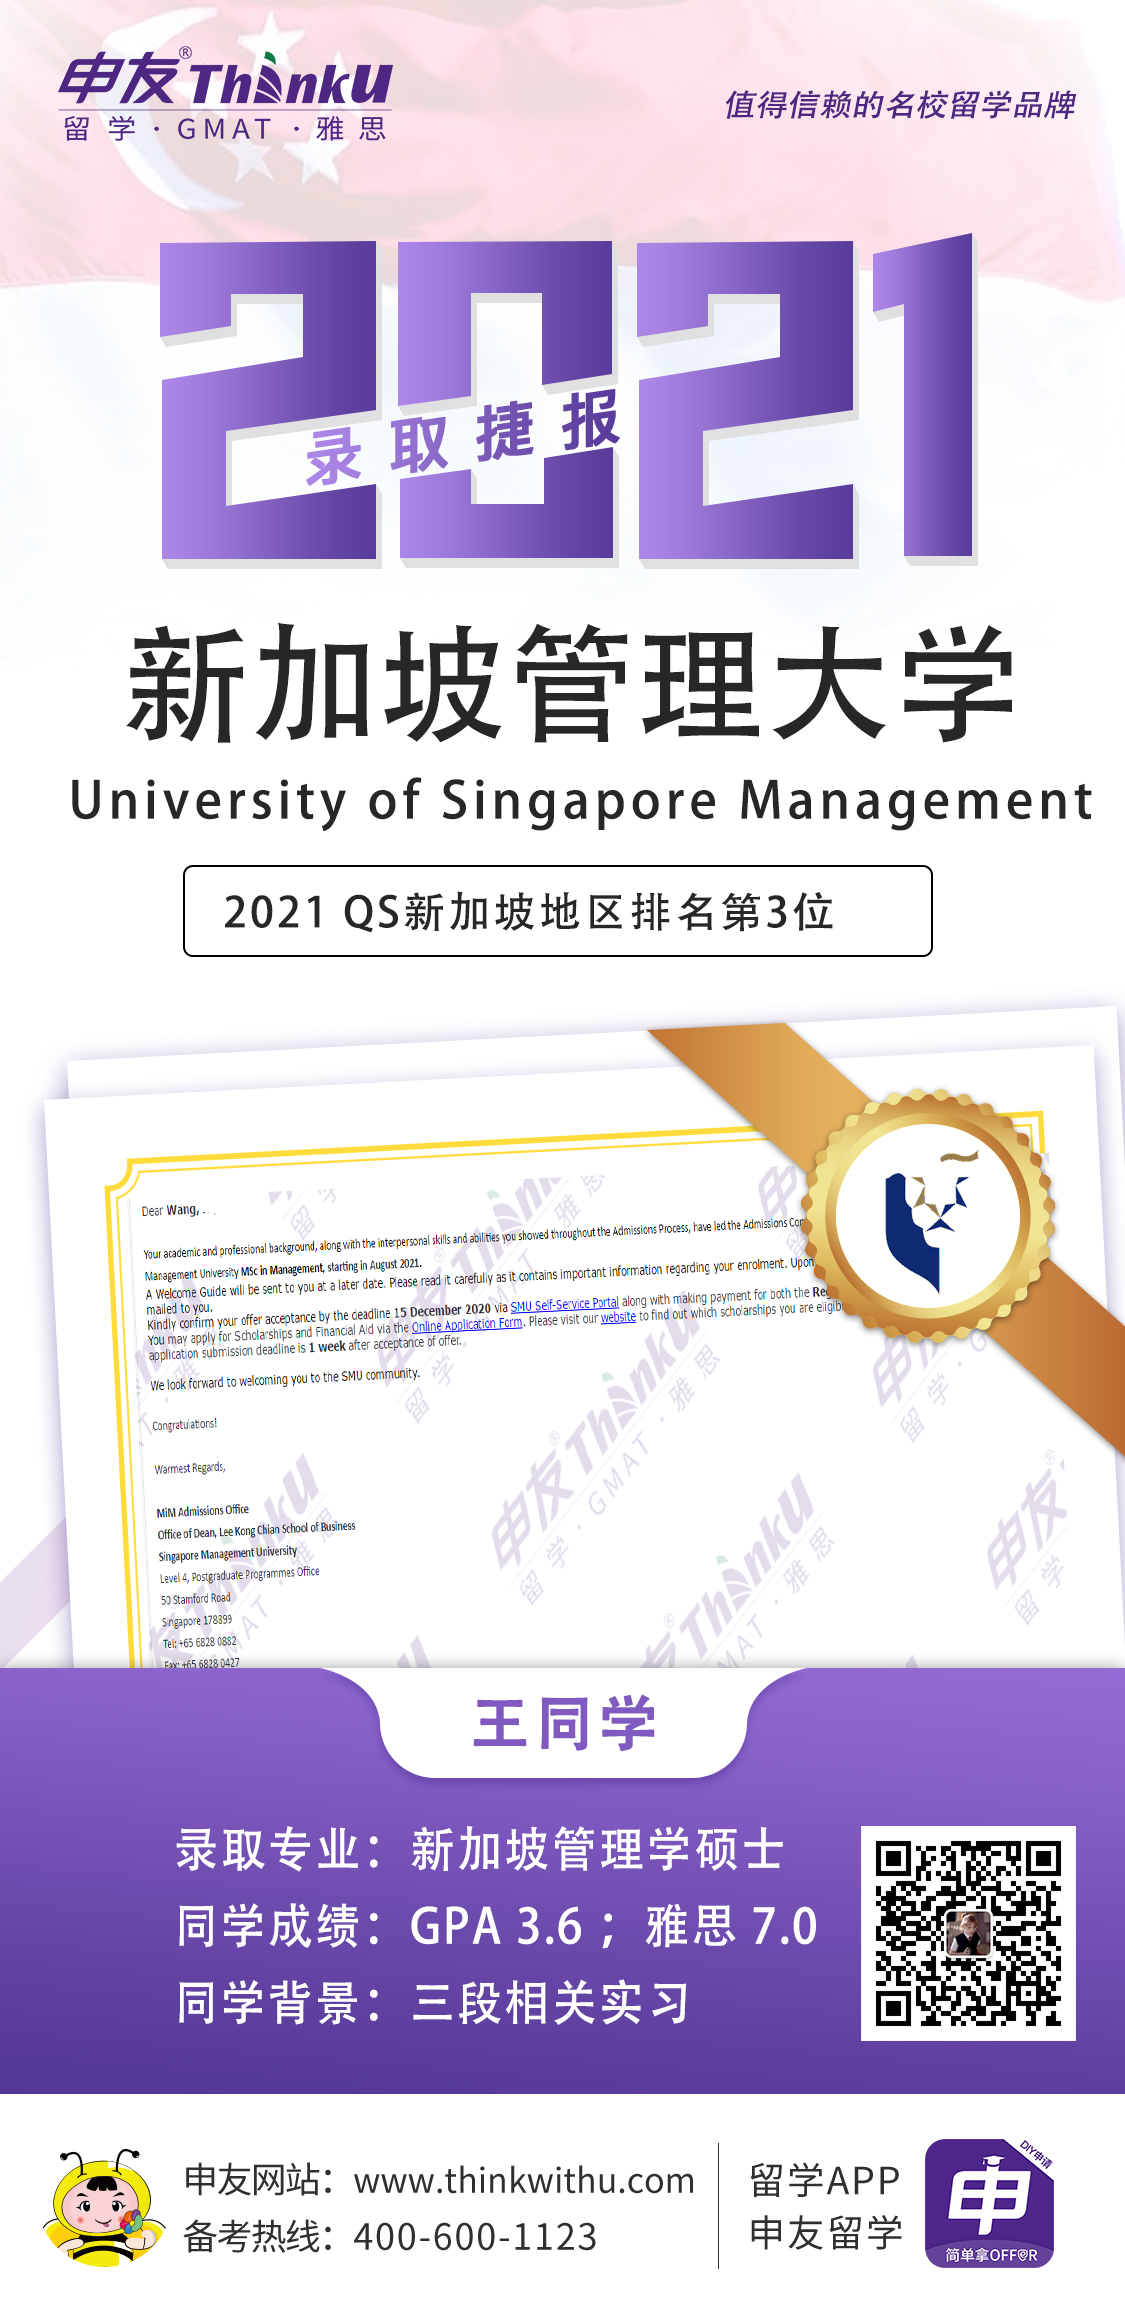 王同学 北京第二外国语学院 飞跃 新加坡管理大学 offer.png